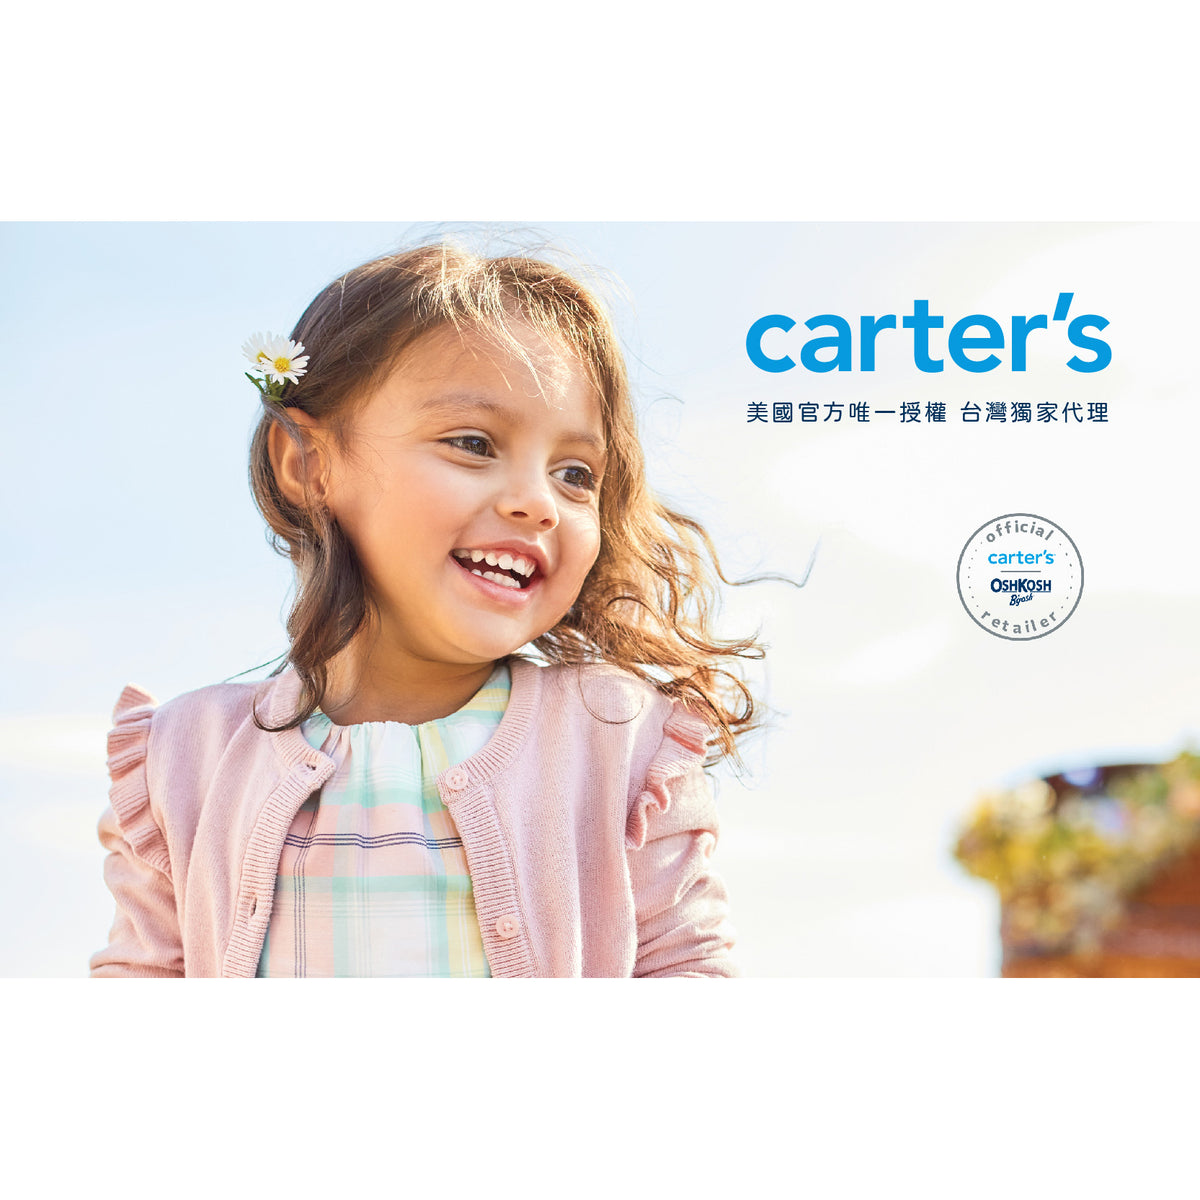 Carter's 寶貝藍綁帶無袖洋裝(2T-5T)